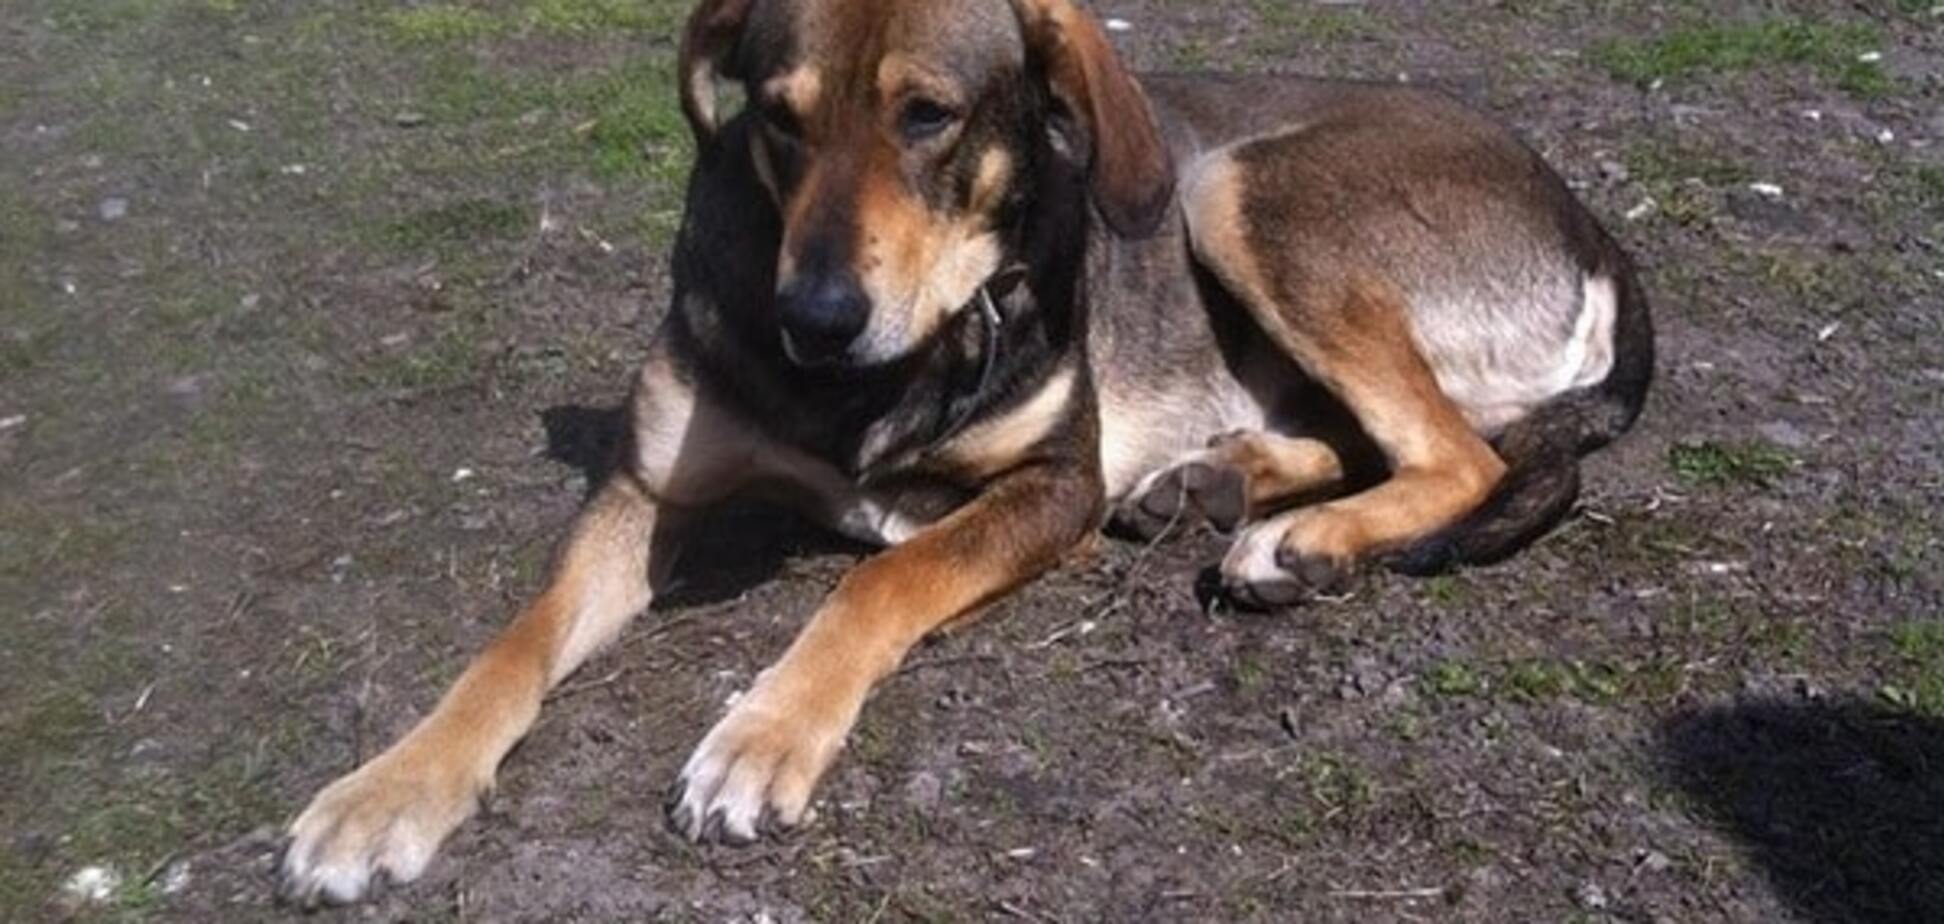 Приютите пса: в Киеве после смерти хозяина собака стала бездомной